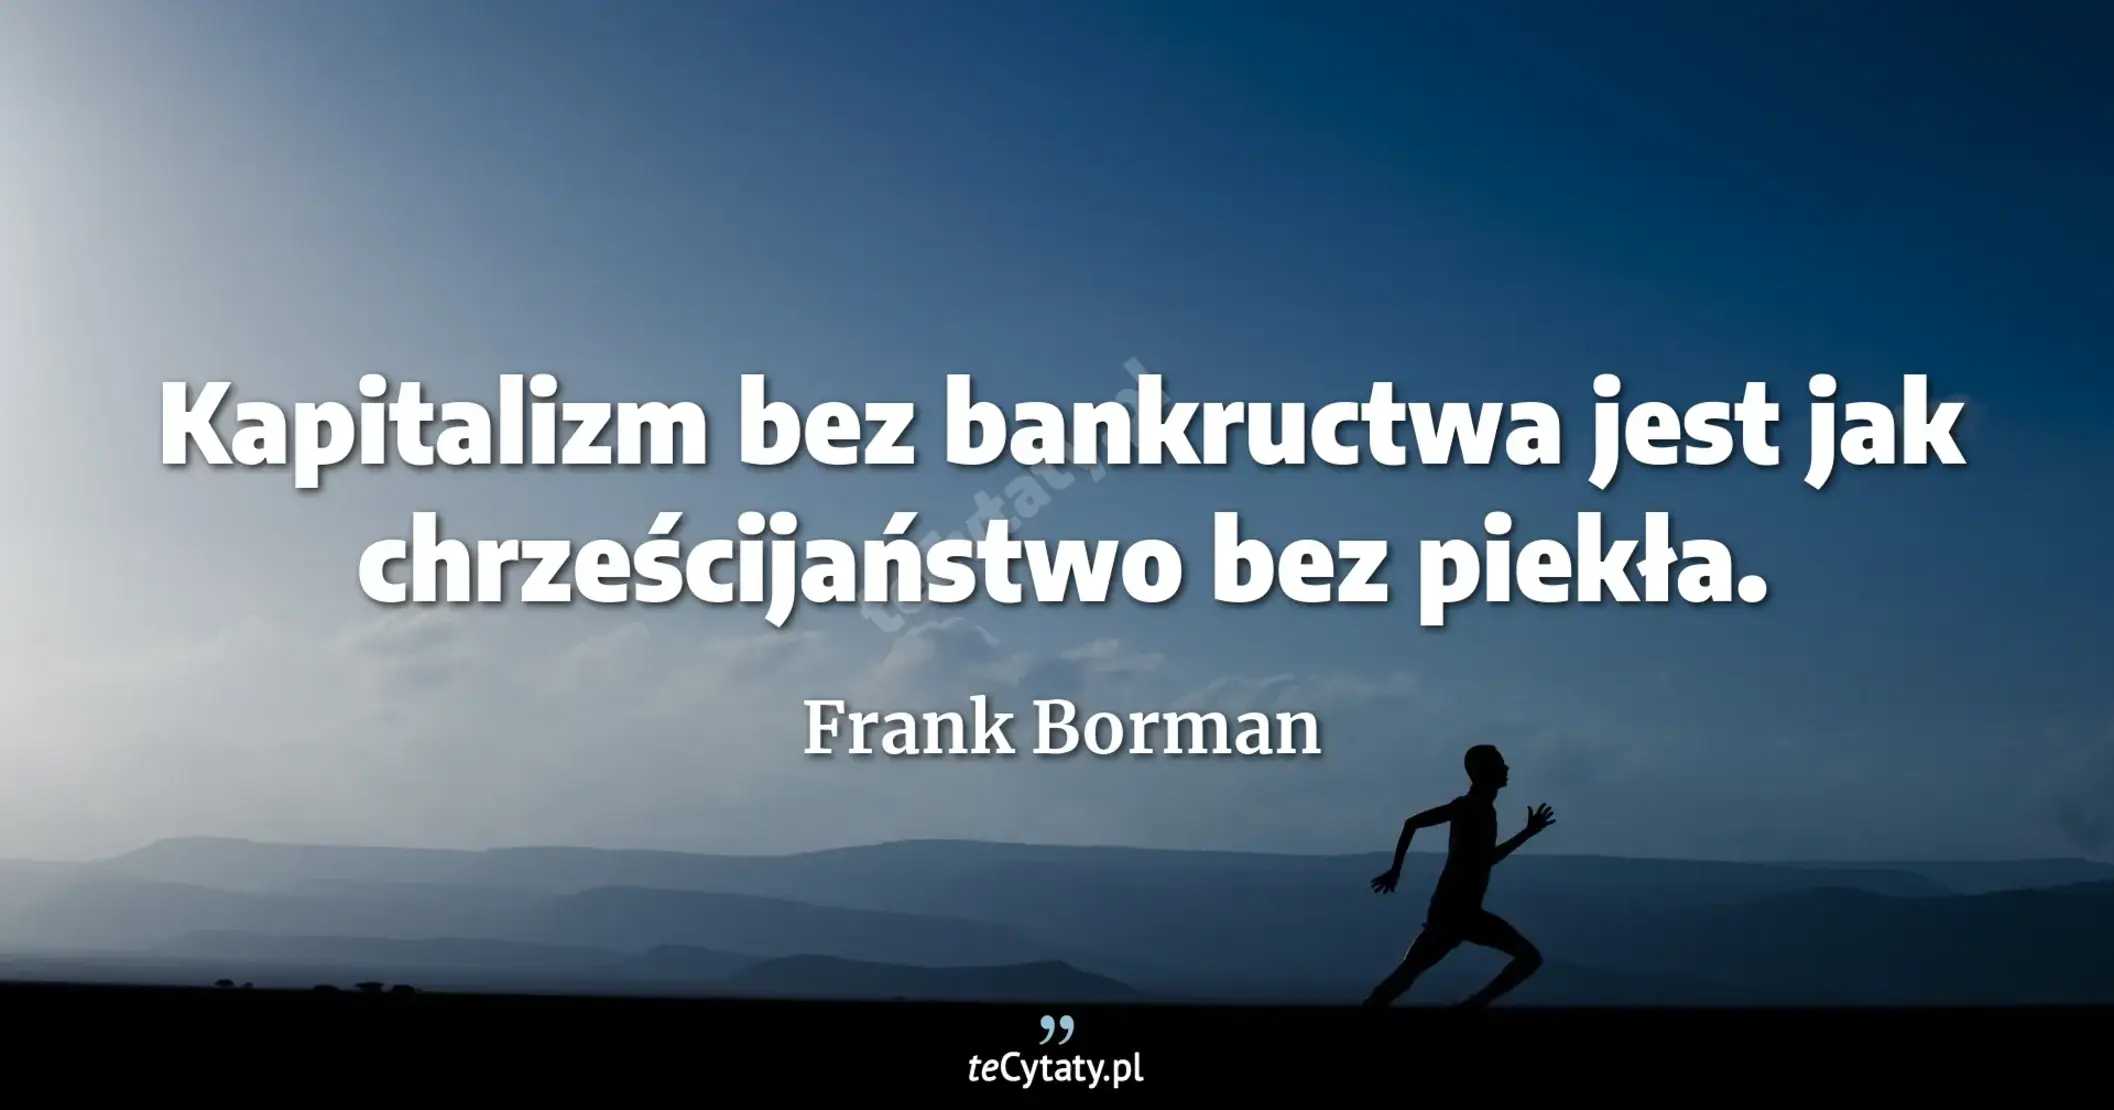 Kapitalizm bez bankructwa jest jak chrześcijaństwo bez piekła. - Frank Borman